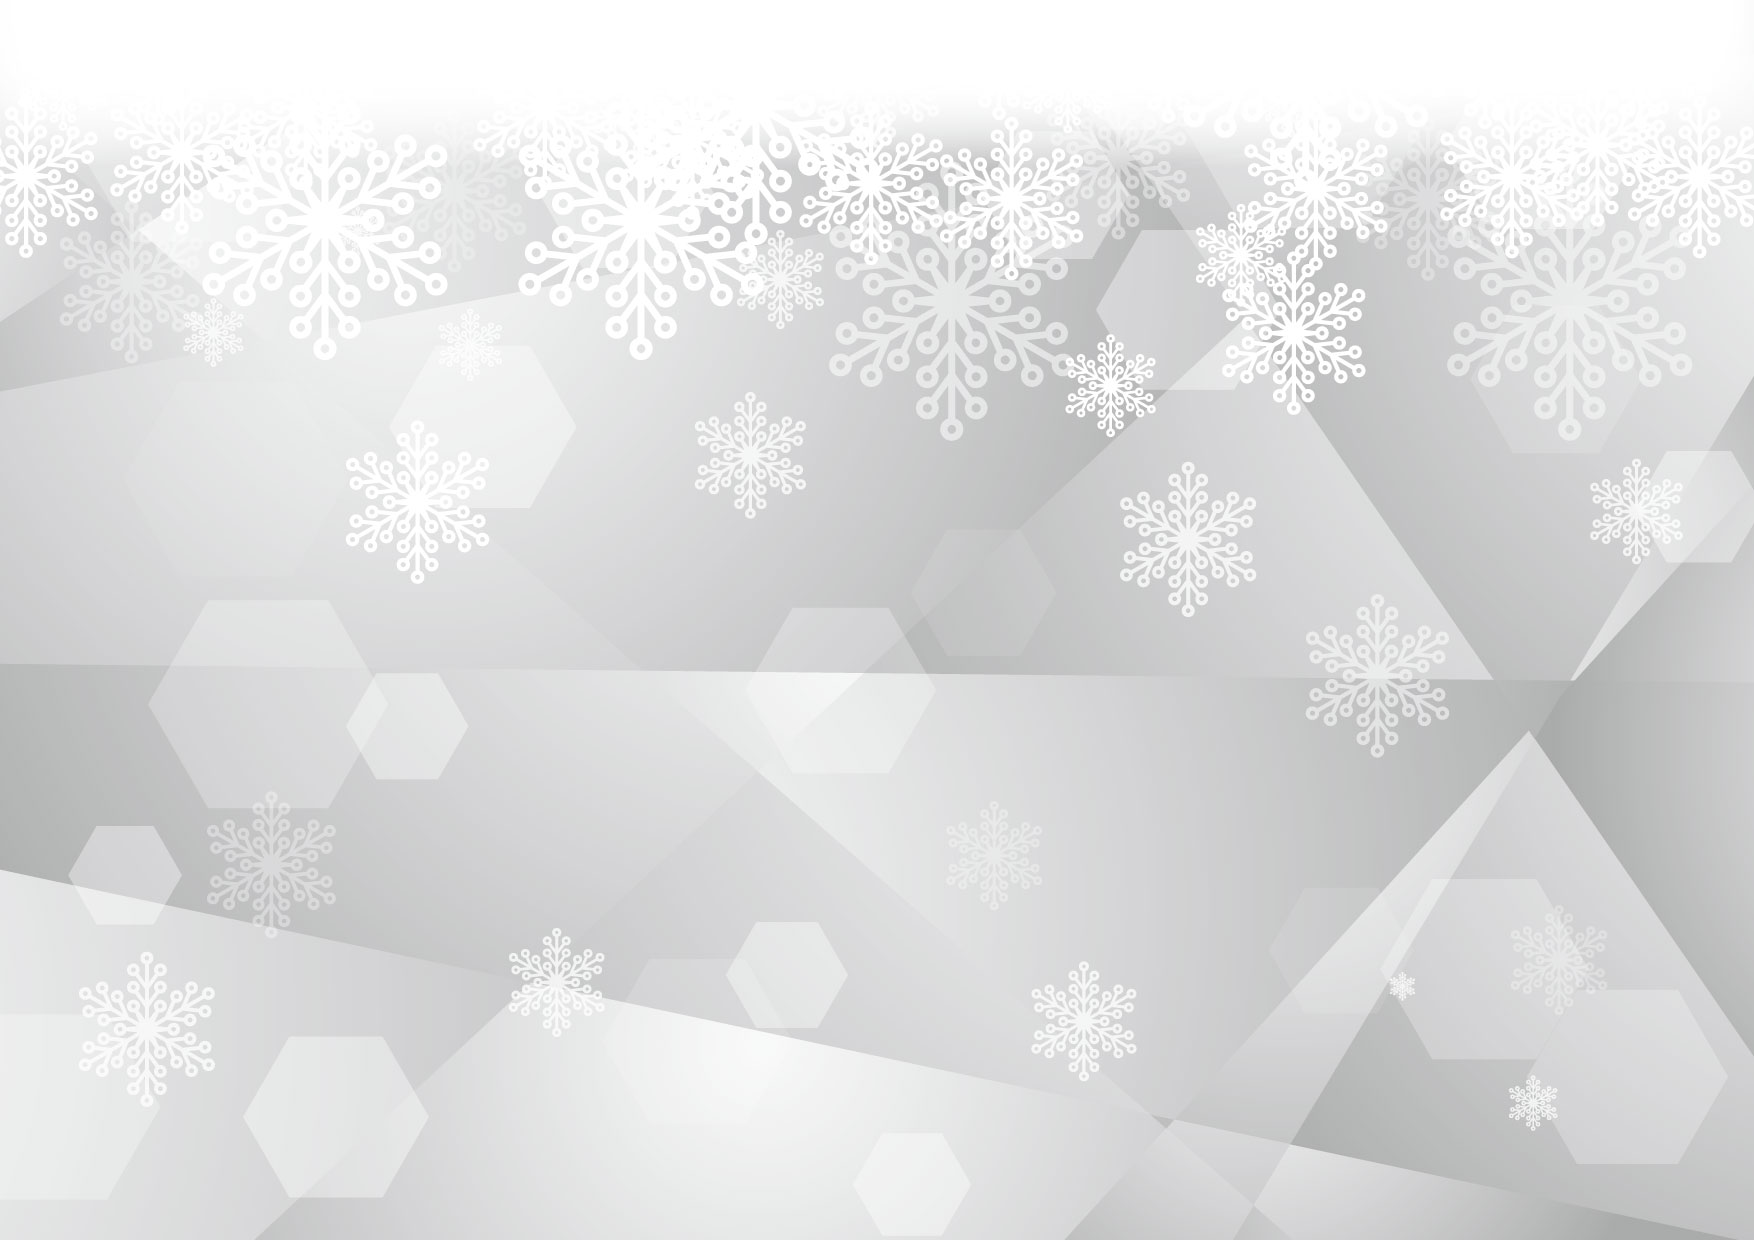 可愛いイラスト無料 雪の結晶 ガラス グレー 背景 Free Illustration Snow Crystal Glass Gray Background 公式 イラストダウンロード